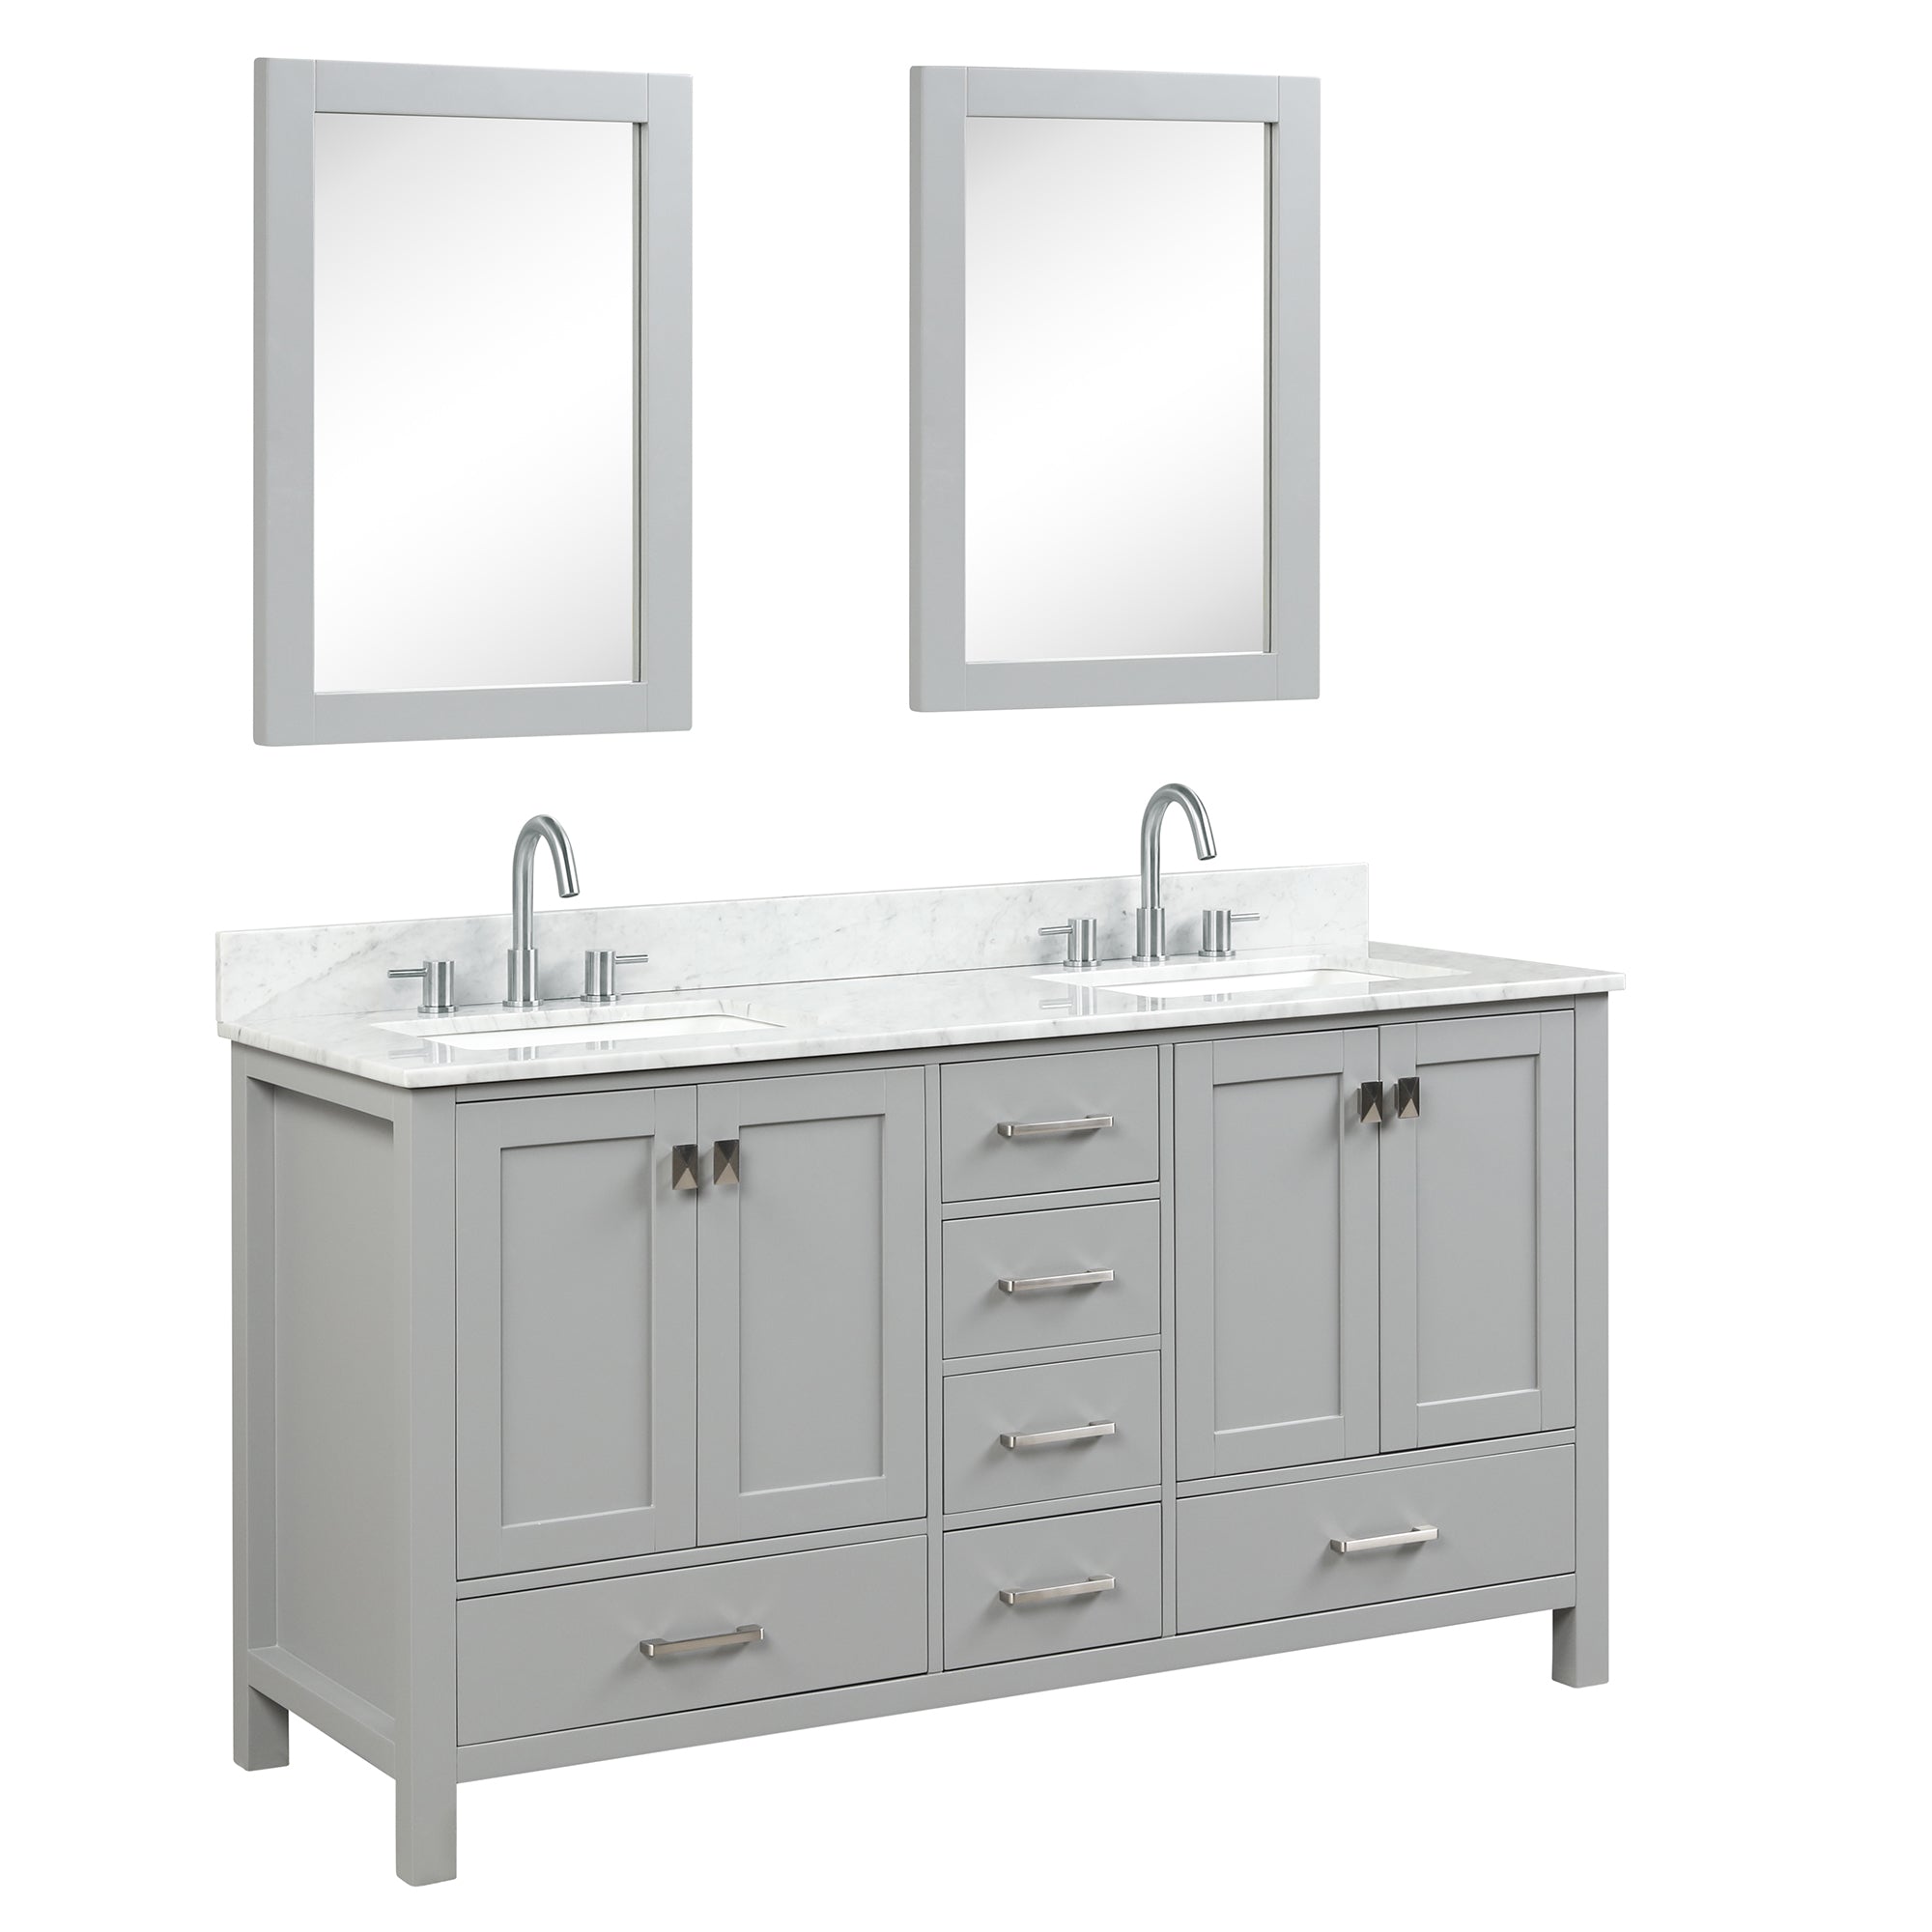 Geneva 60" Bathroom Vanity Double SInk with Marble Countertop - Contemporary Bathroom Vanity